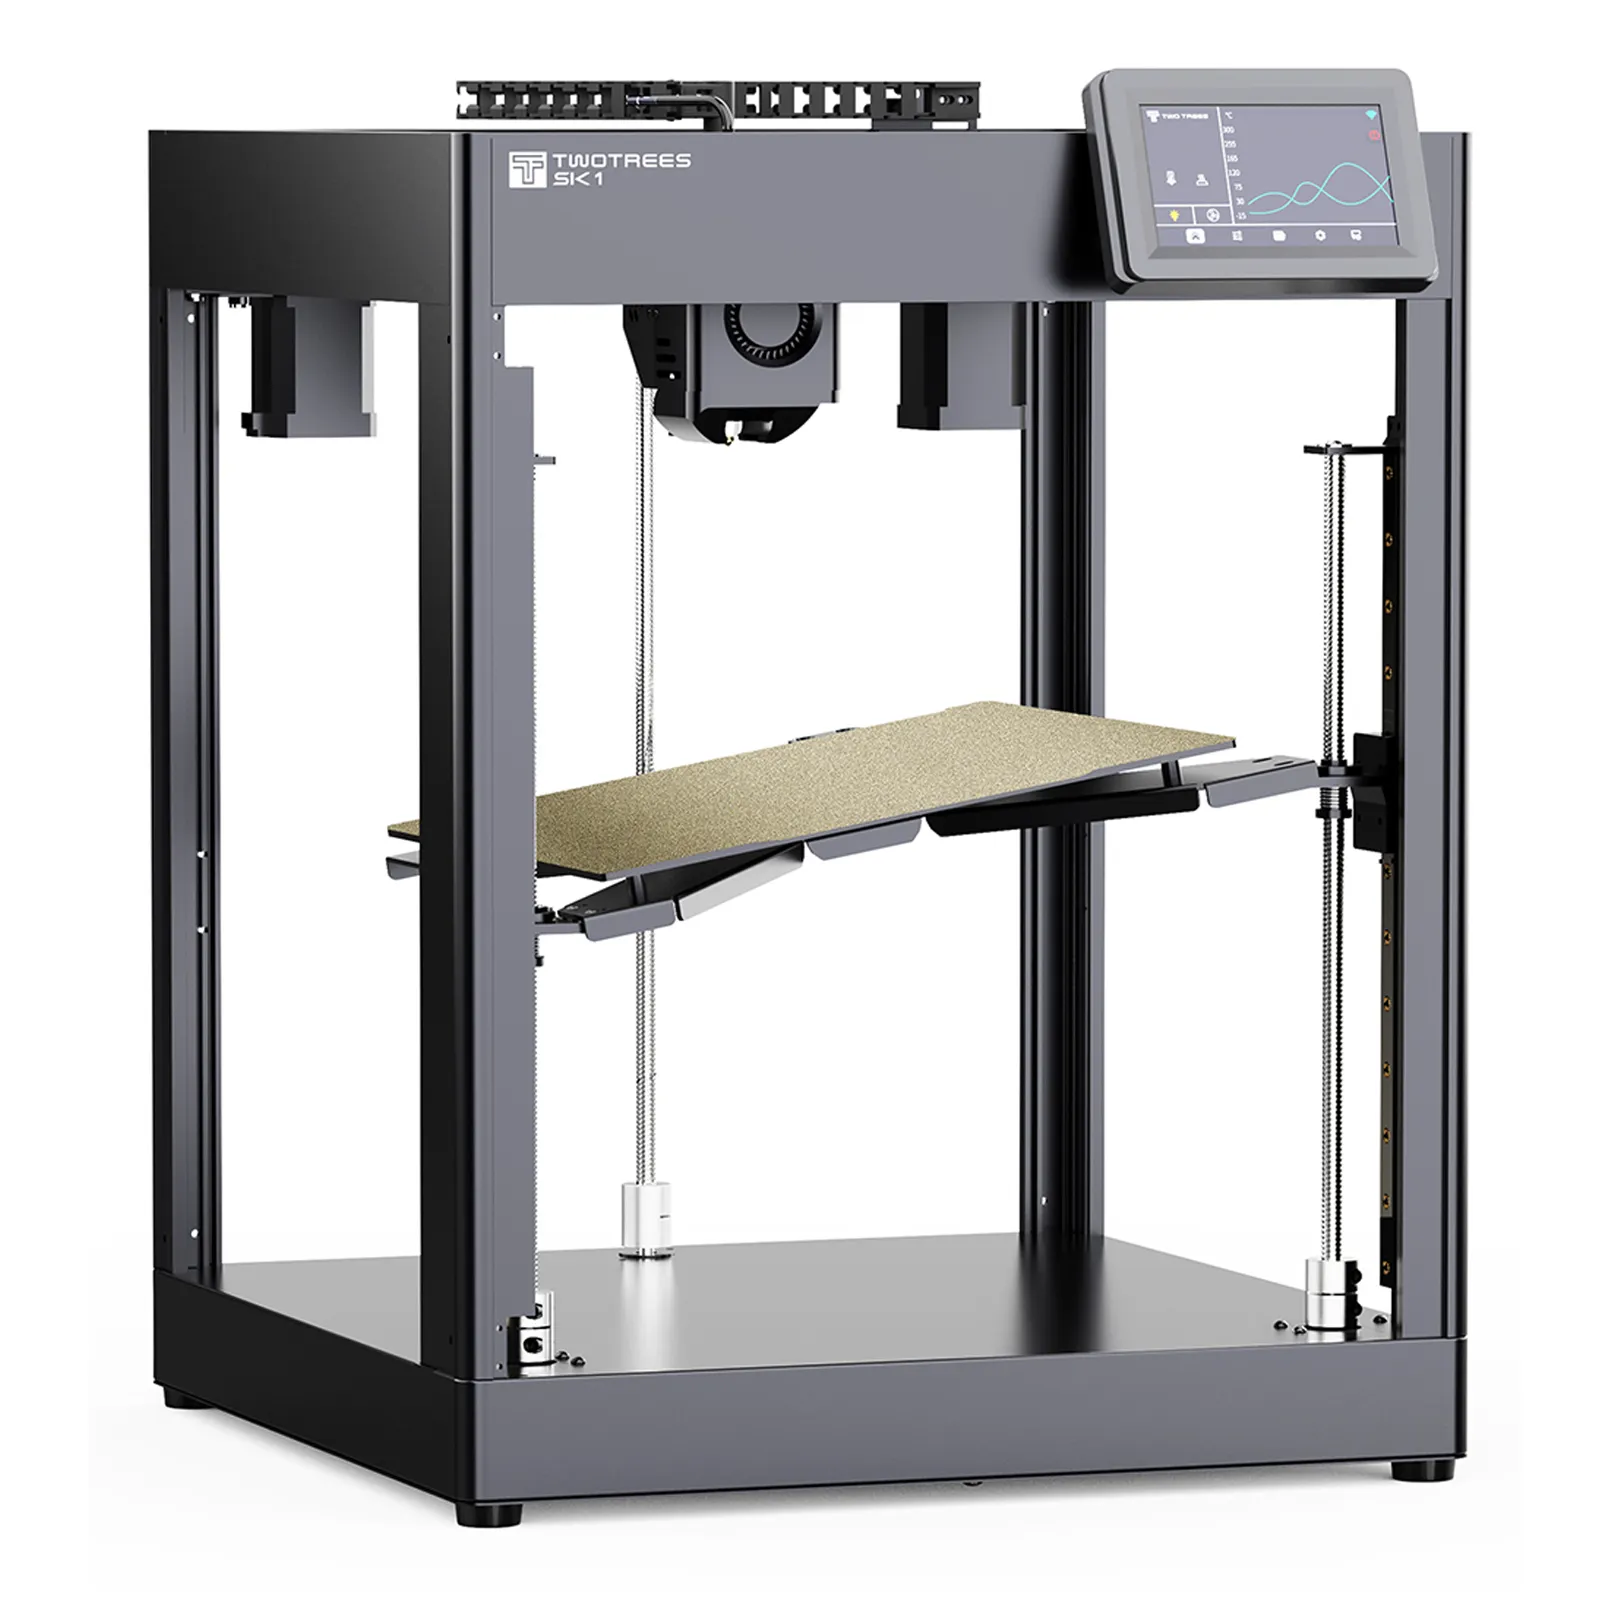 TWOTREES SK1 700 mm/s Klipper Machine d'imprimante 3D industrielle à nivellement automatique Prix de la machine Metal 3D Impresora pour imprimantes 3D